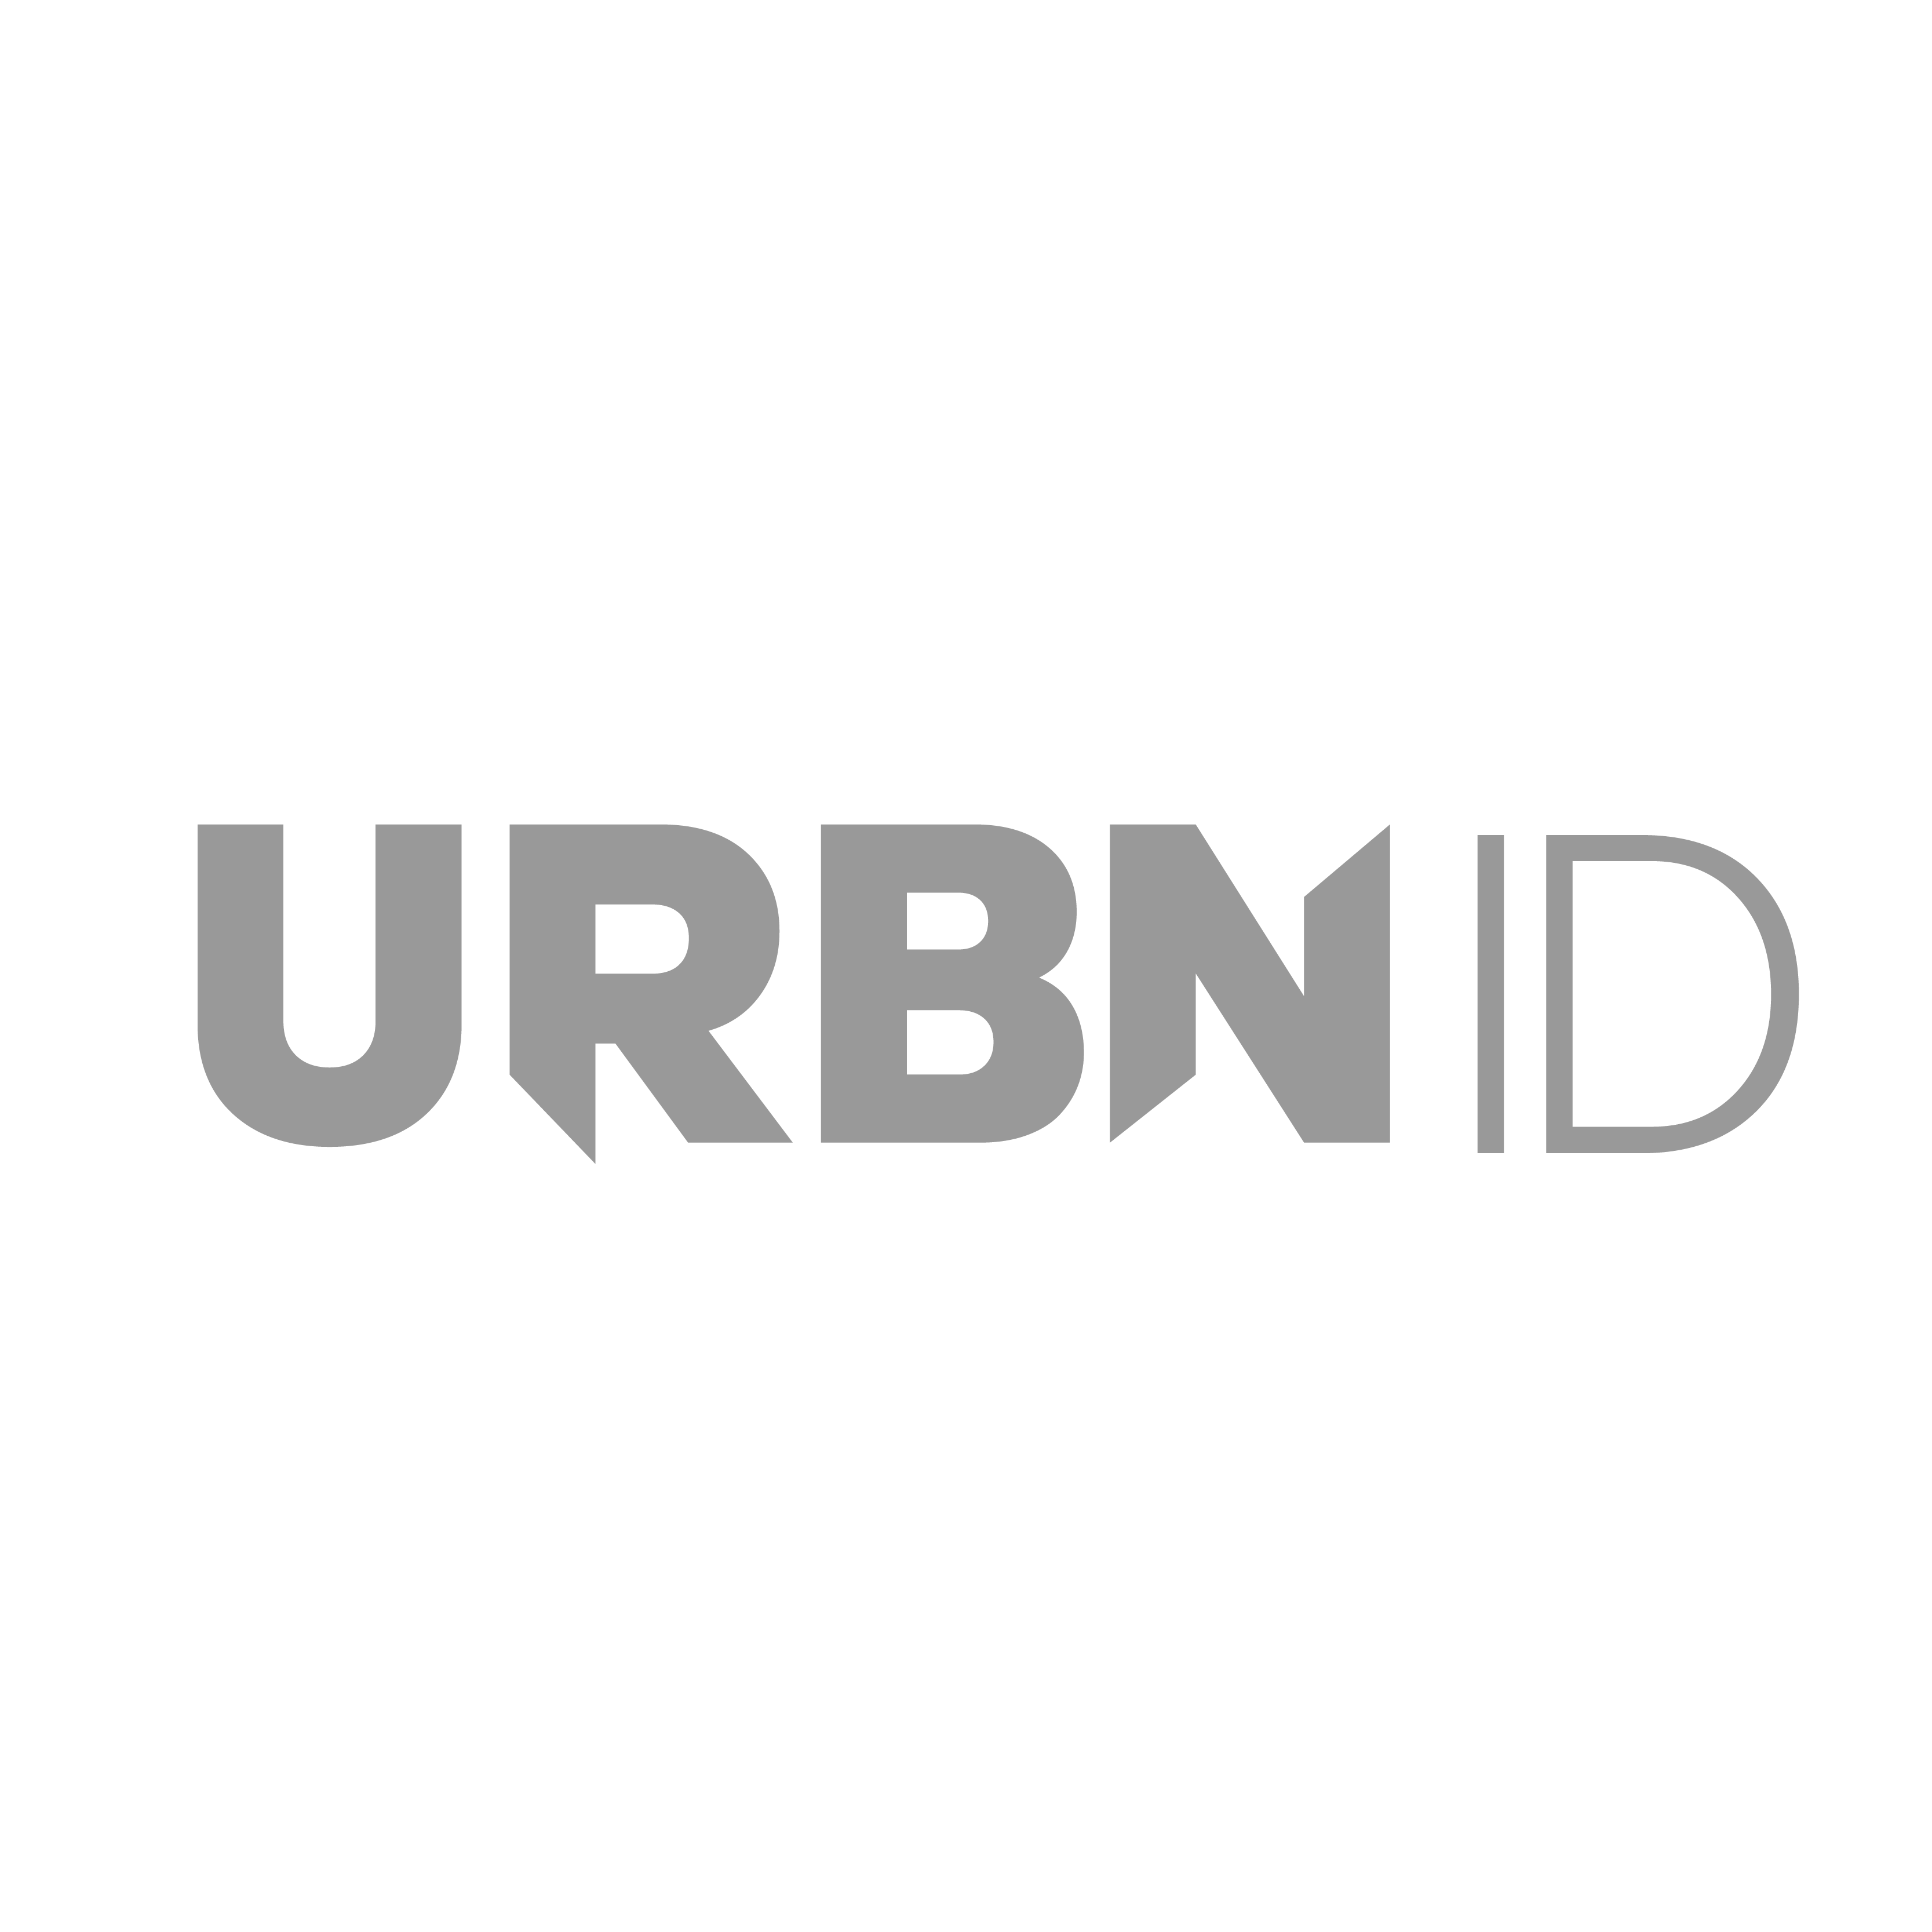 Urbn ID